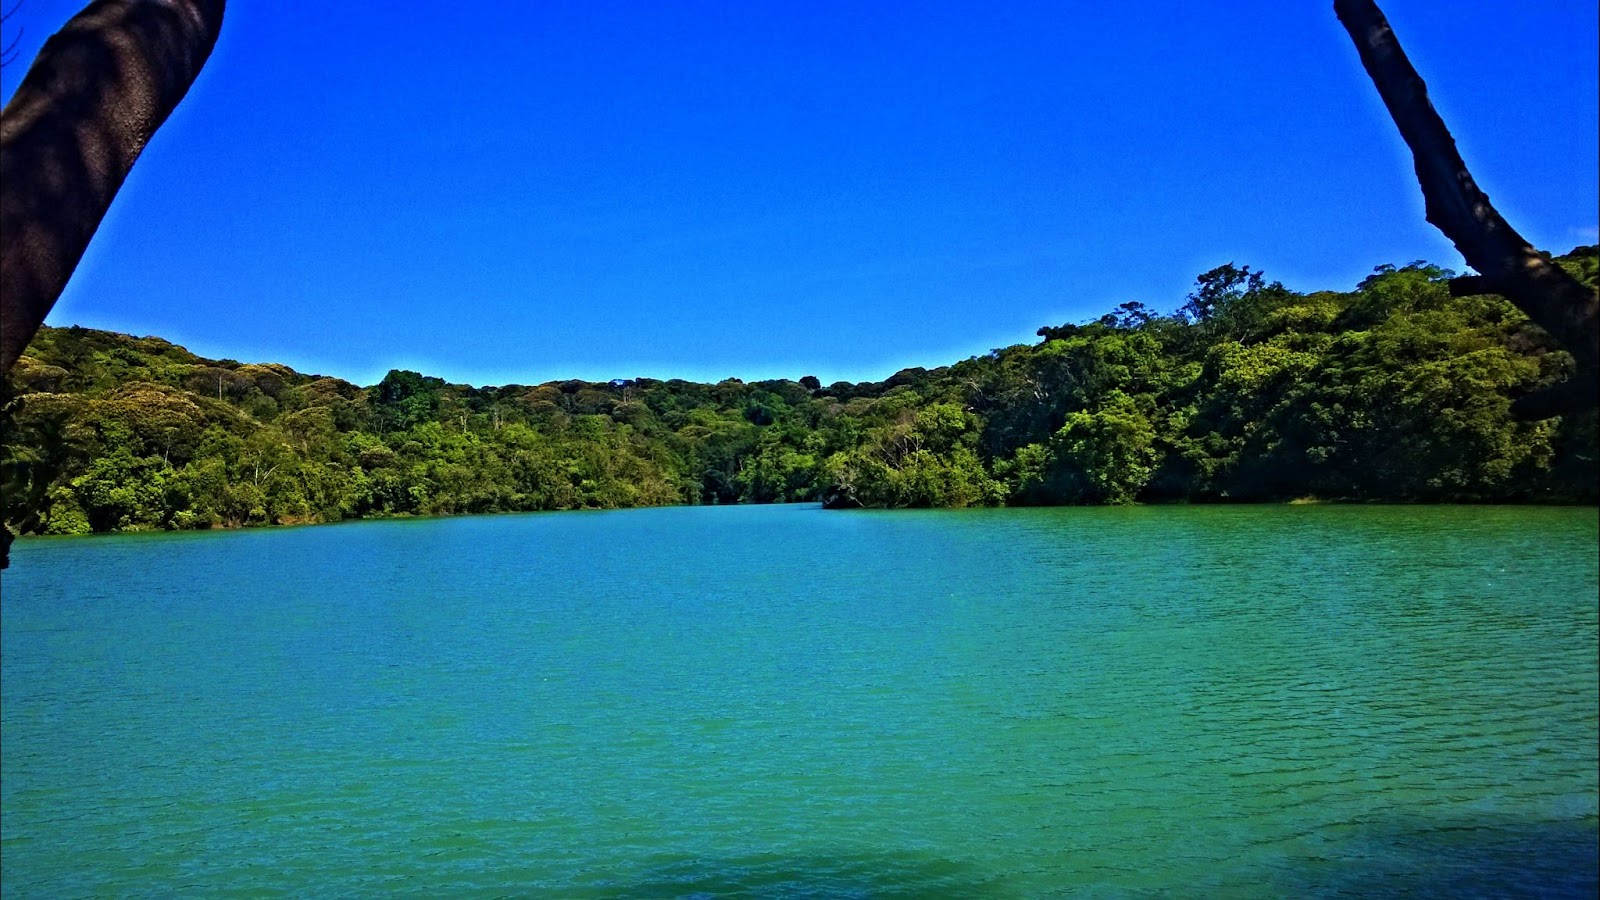 Lagoa Azul da Ilha de Itamaracá. Foto da lagoa quase na mesma tonalidade de azul que o céu, separado por uma faixa da vegetação natural com árvores verdes.
